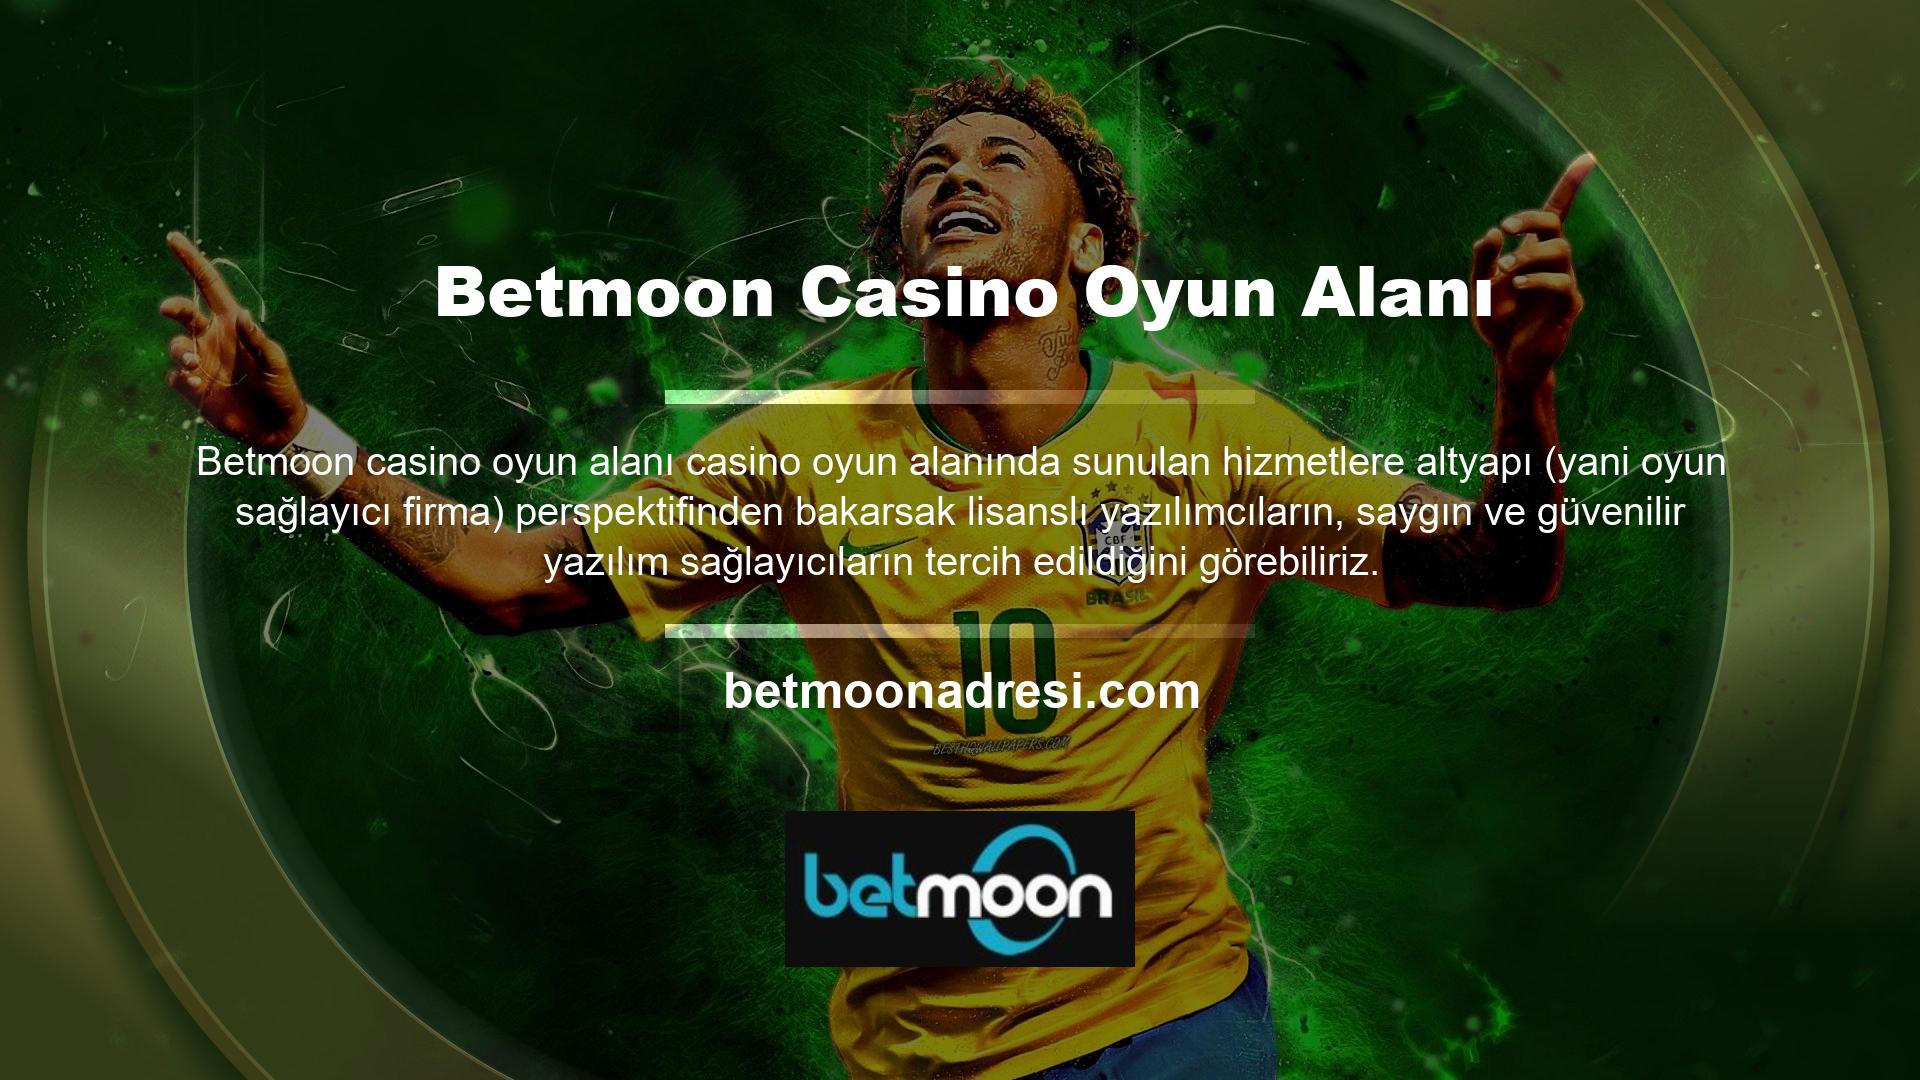 Betmoon Casino Oyunları Bölümü Betmoon Canlı Casino sitedeki en popüler seçenektir